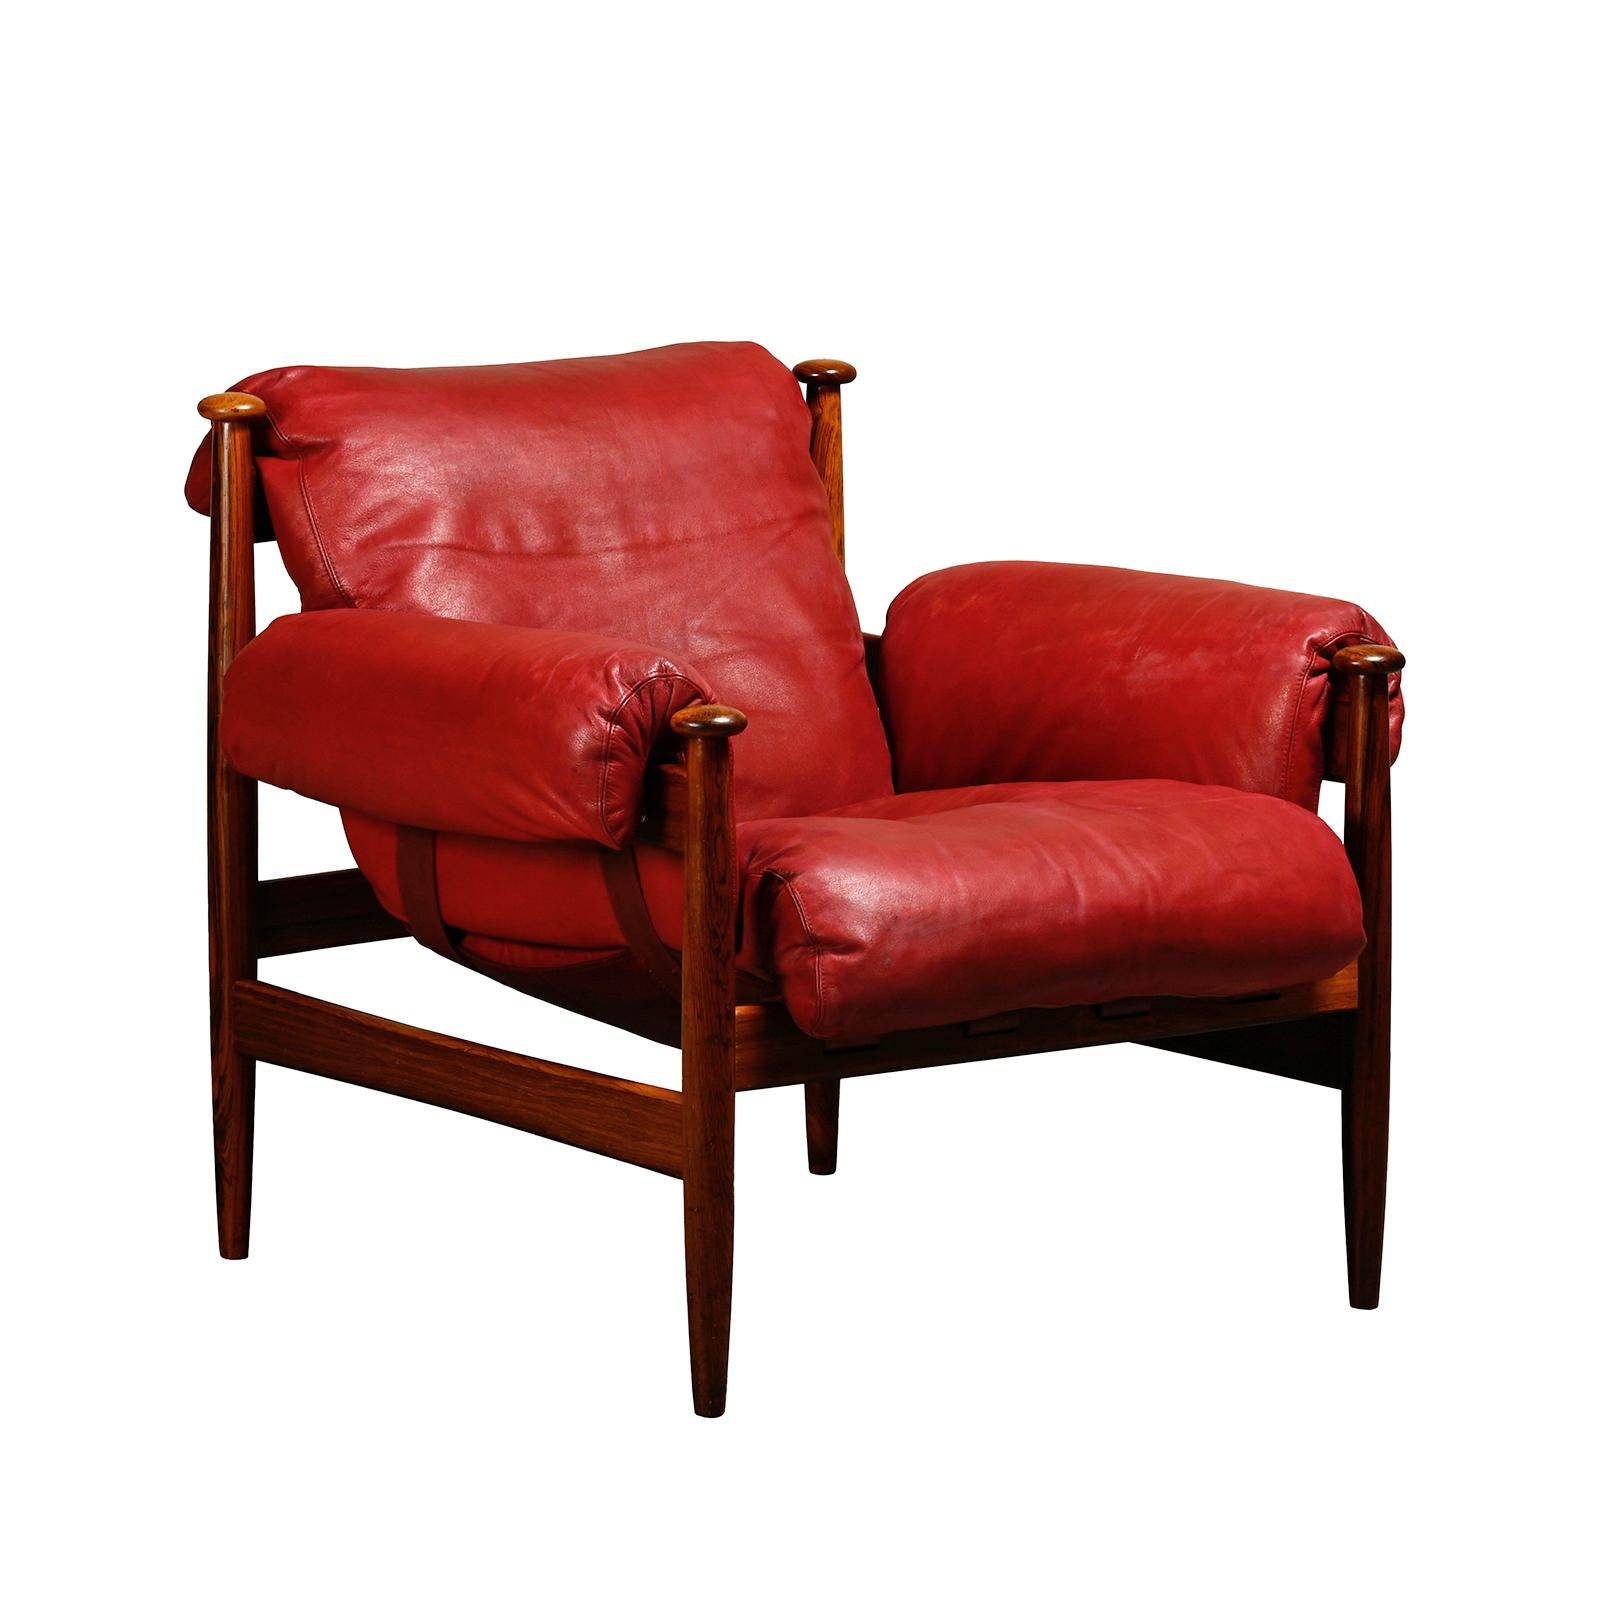 Eric Merthen Amiral Lounge Chair aus dunklem Holz und rotem Leder für IRE Möbler